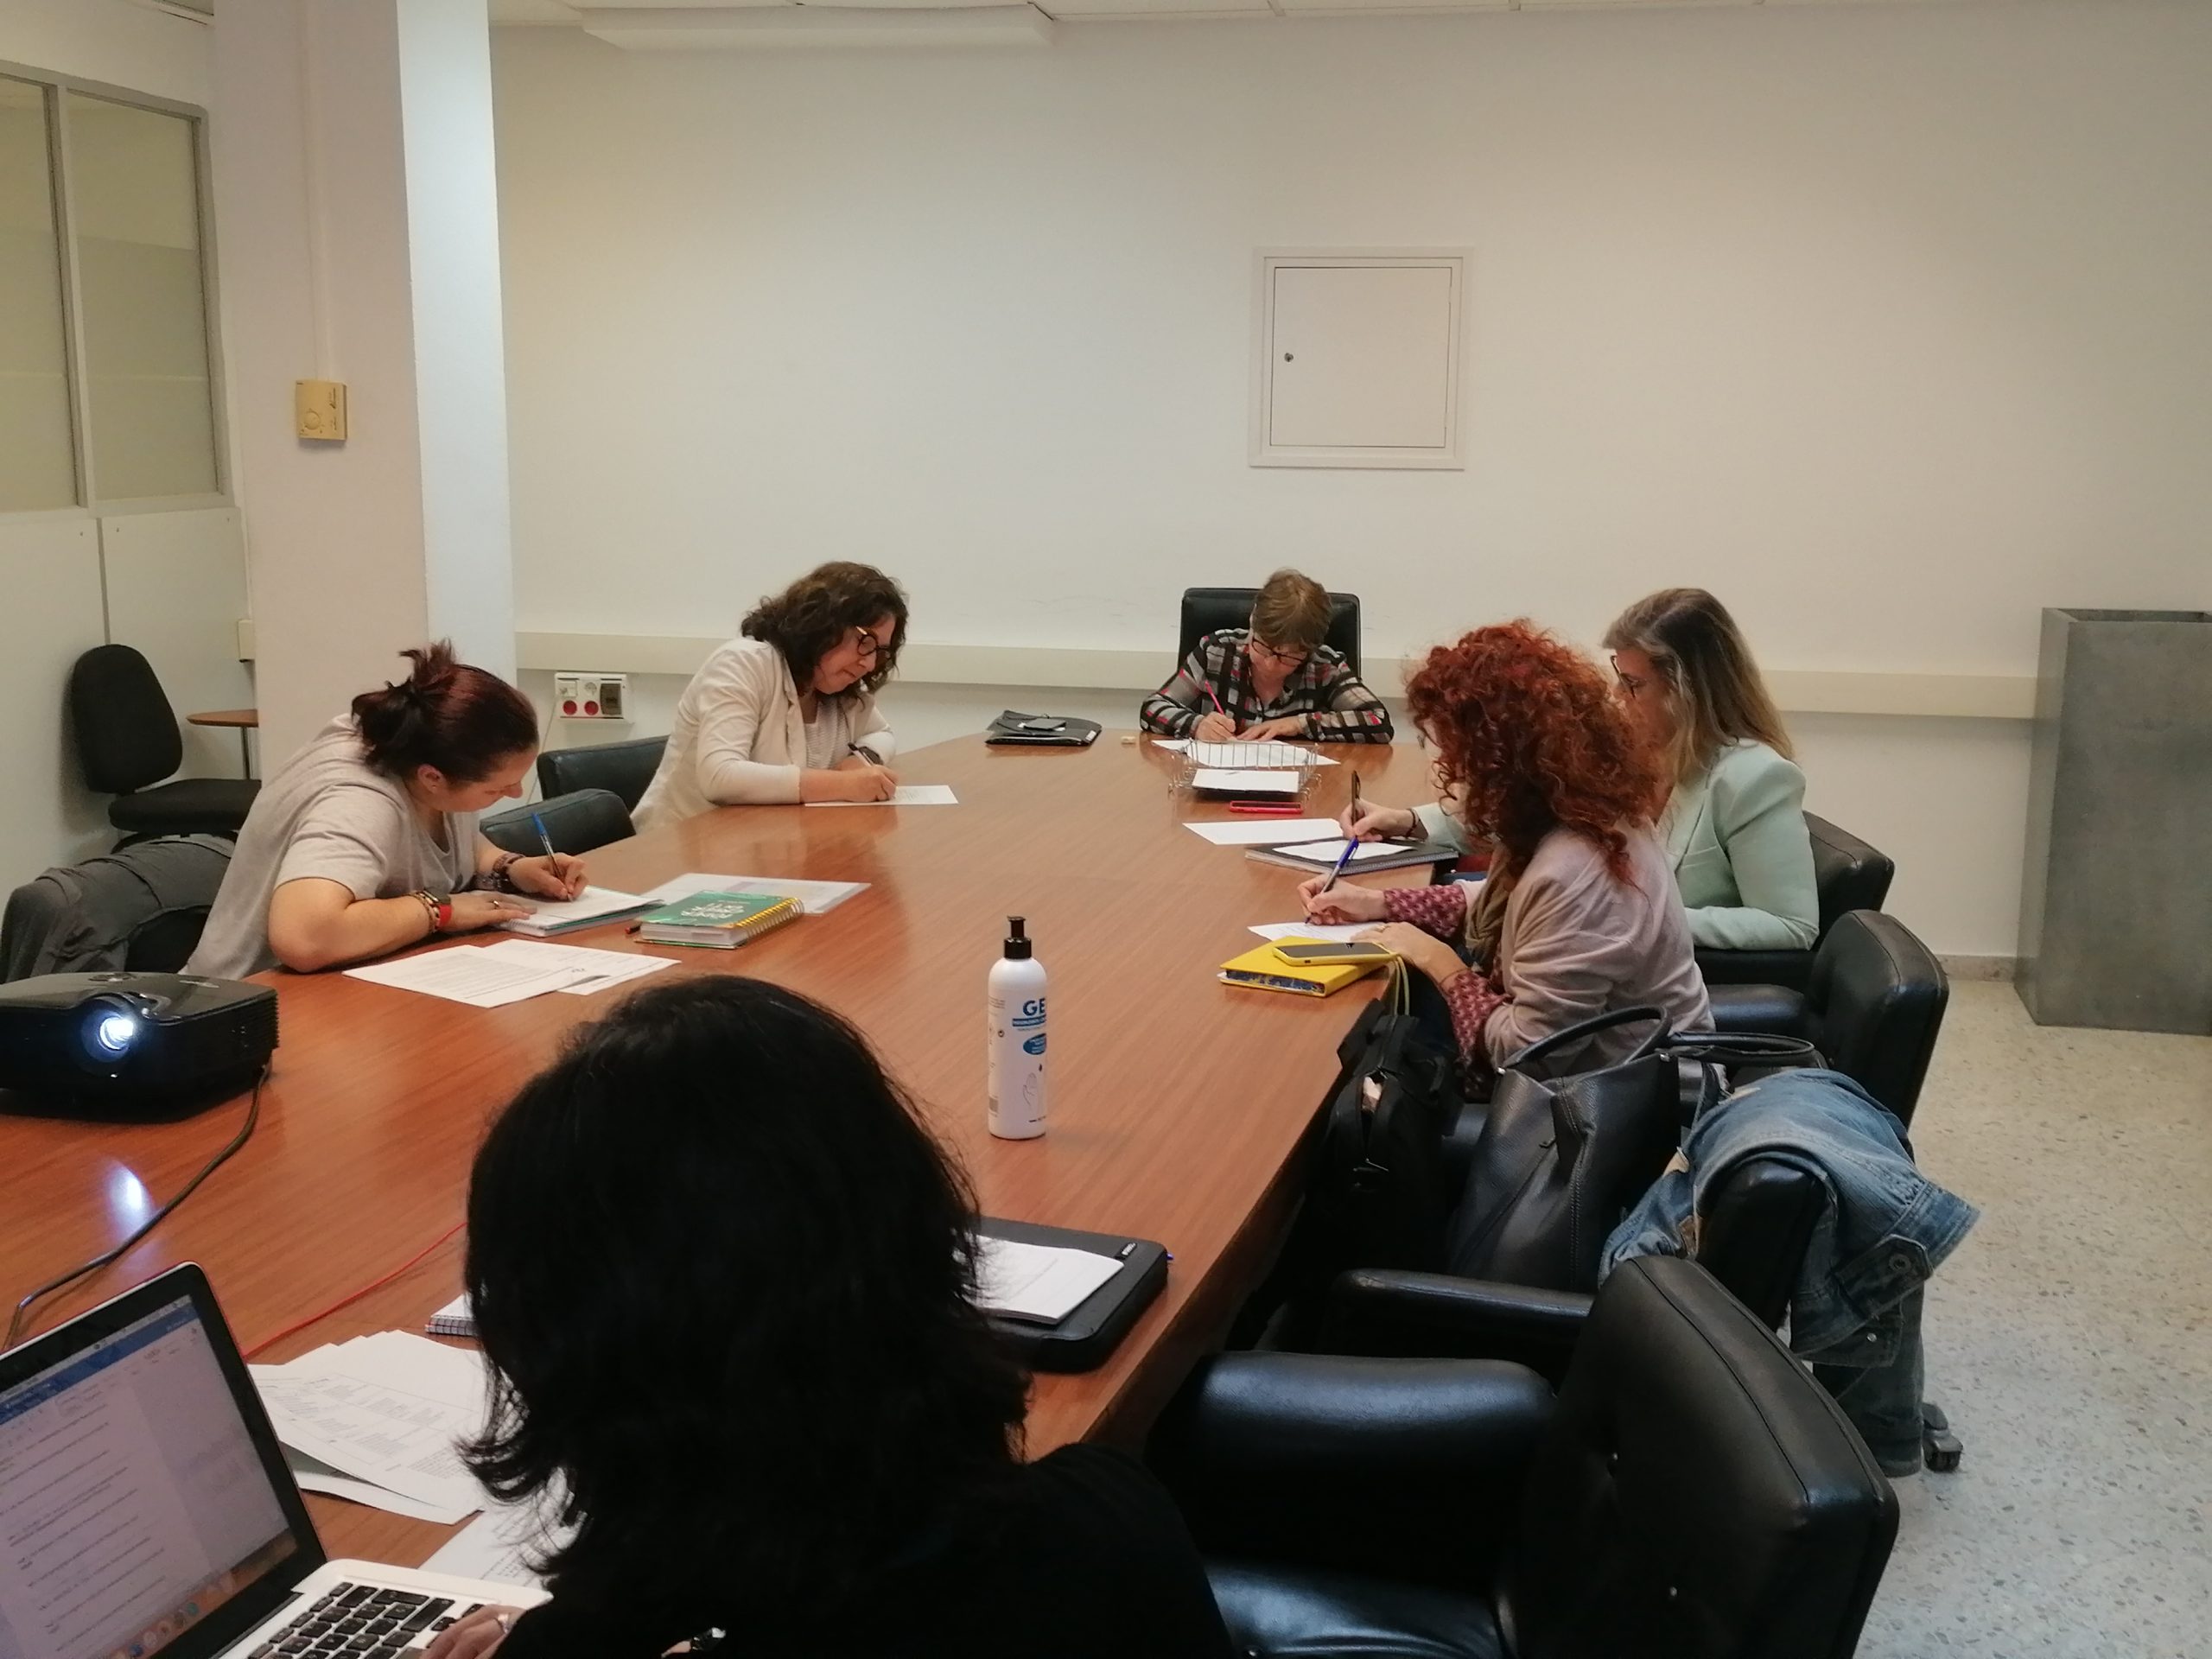 2. Procés participatiu intern de l_Ajuntament de Mataró per a definir la política pública alimentària local